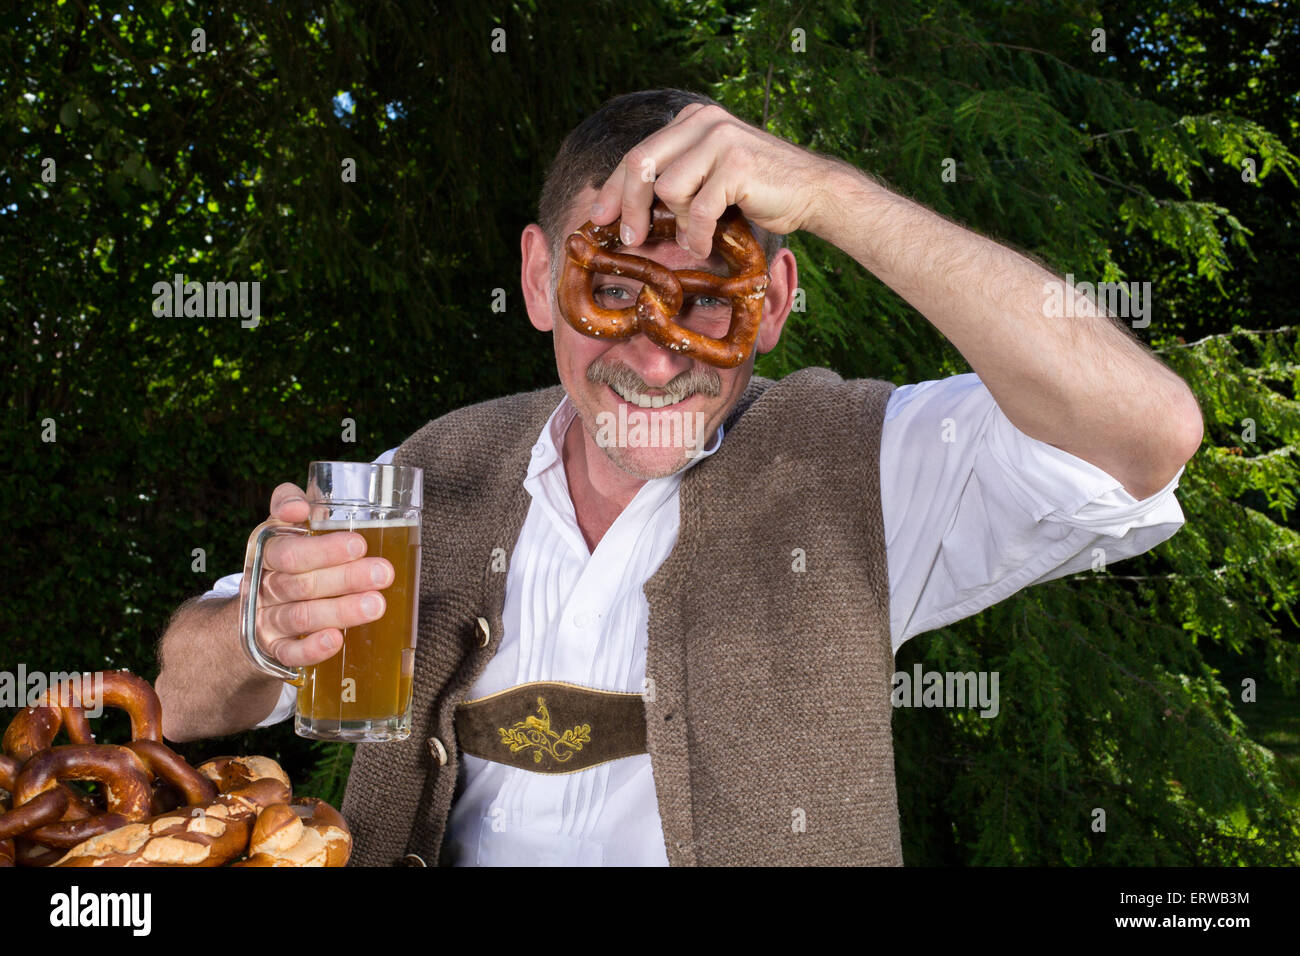 bayerischen Mann sitzt auf der Bank mit einem Bierkrug und Brezel Stockfoto